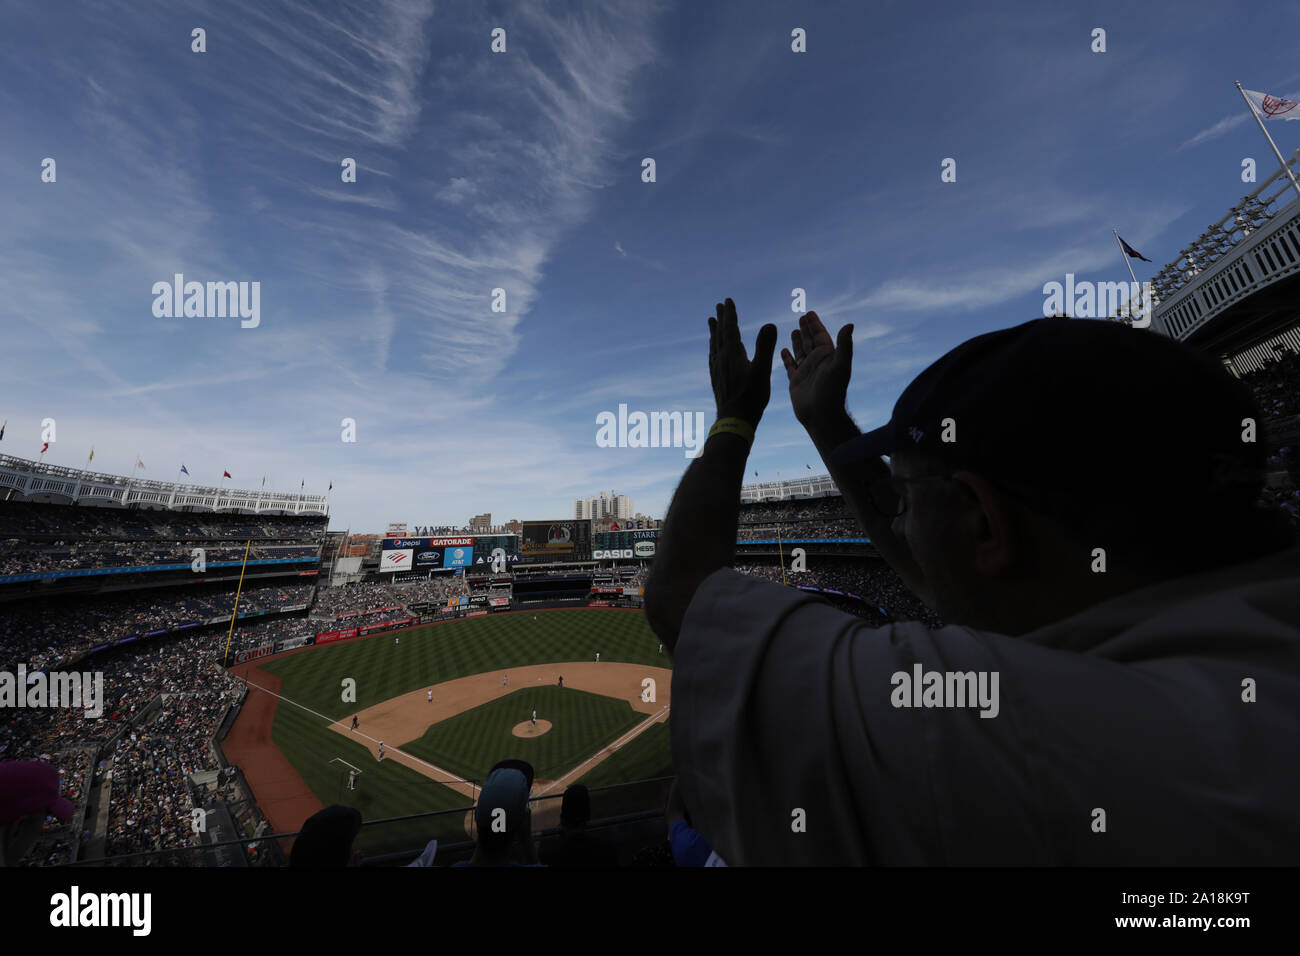 Das Yankee Stadium war die Heimat der New York Yankees, ein Major League Baseball Team. Stockfoto